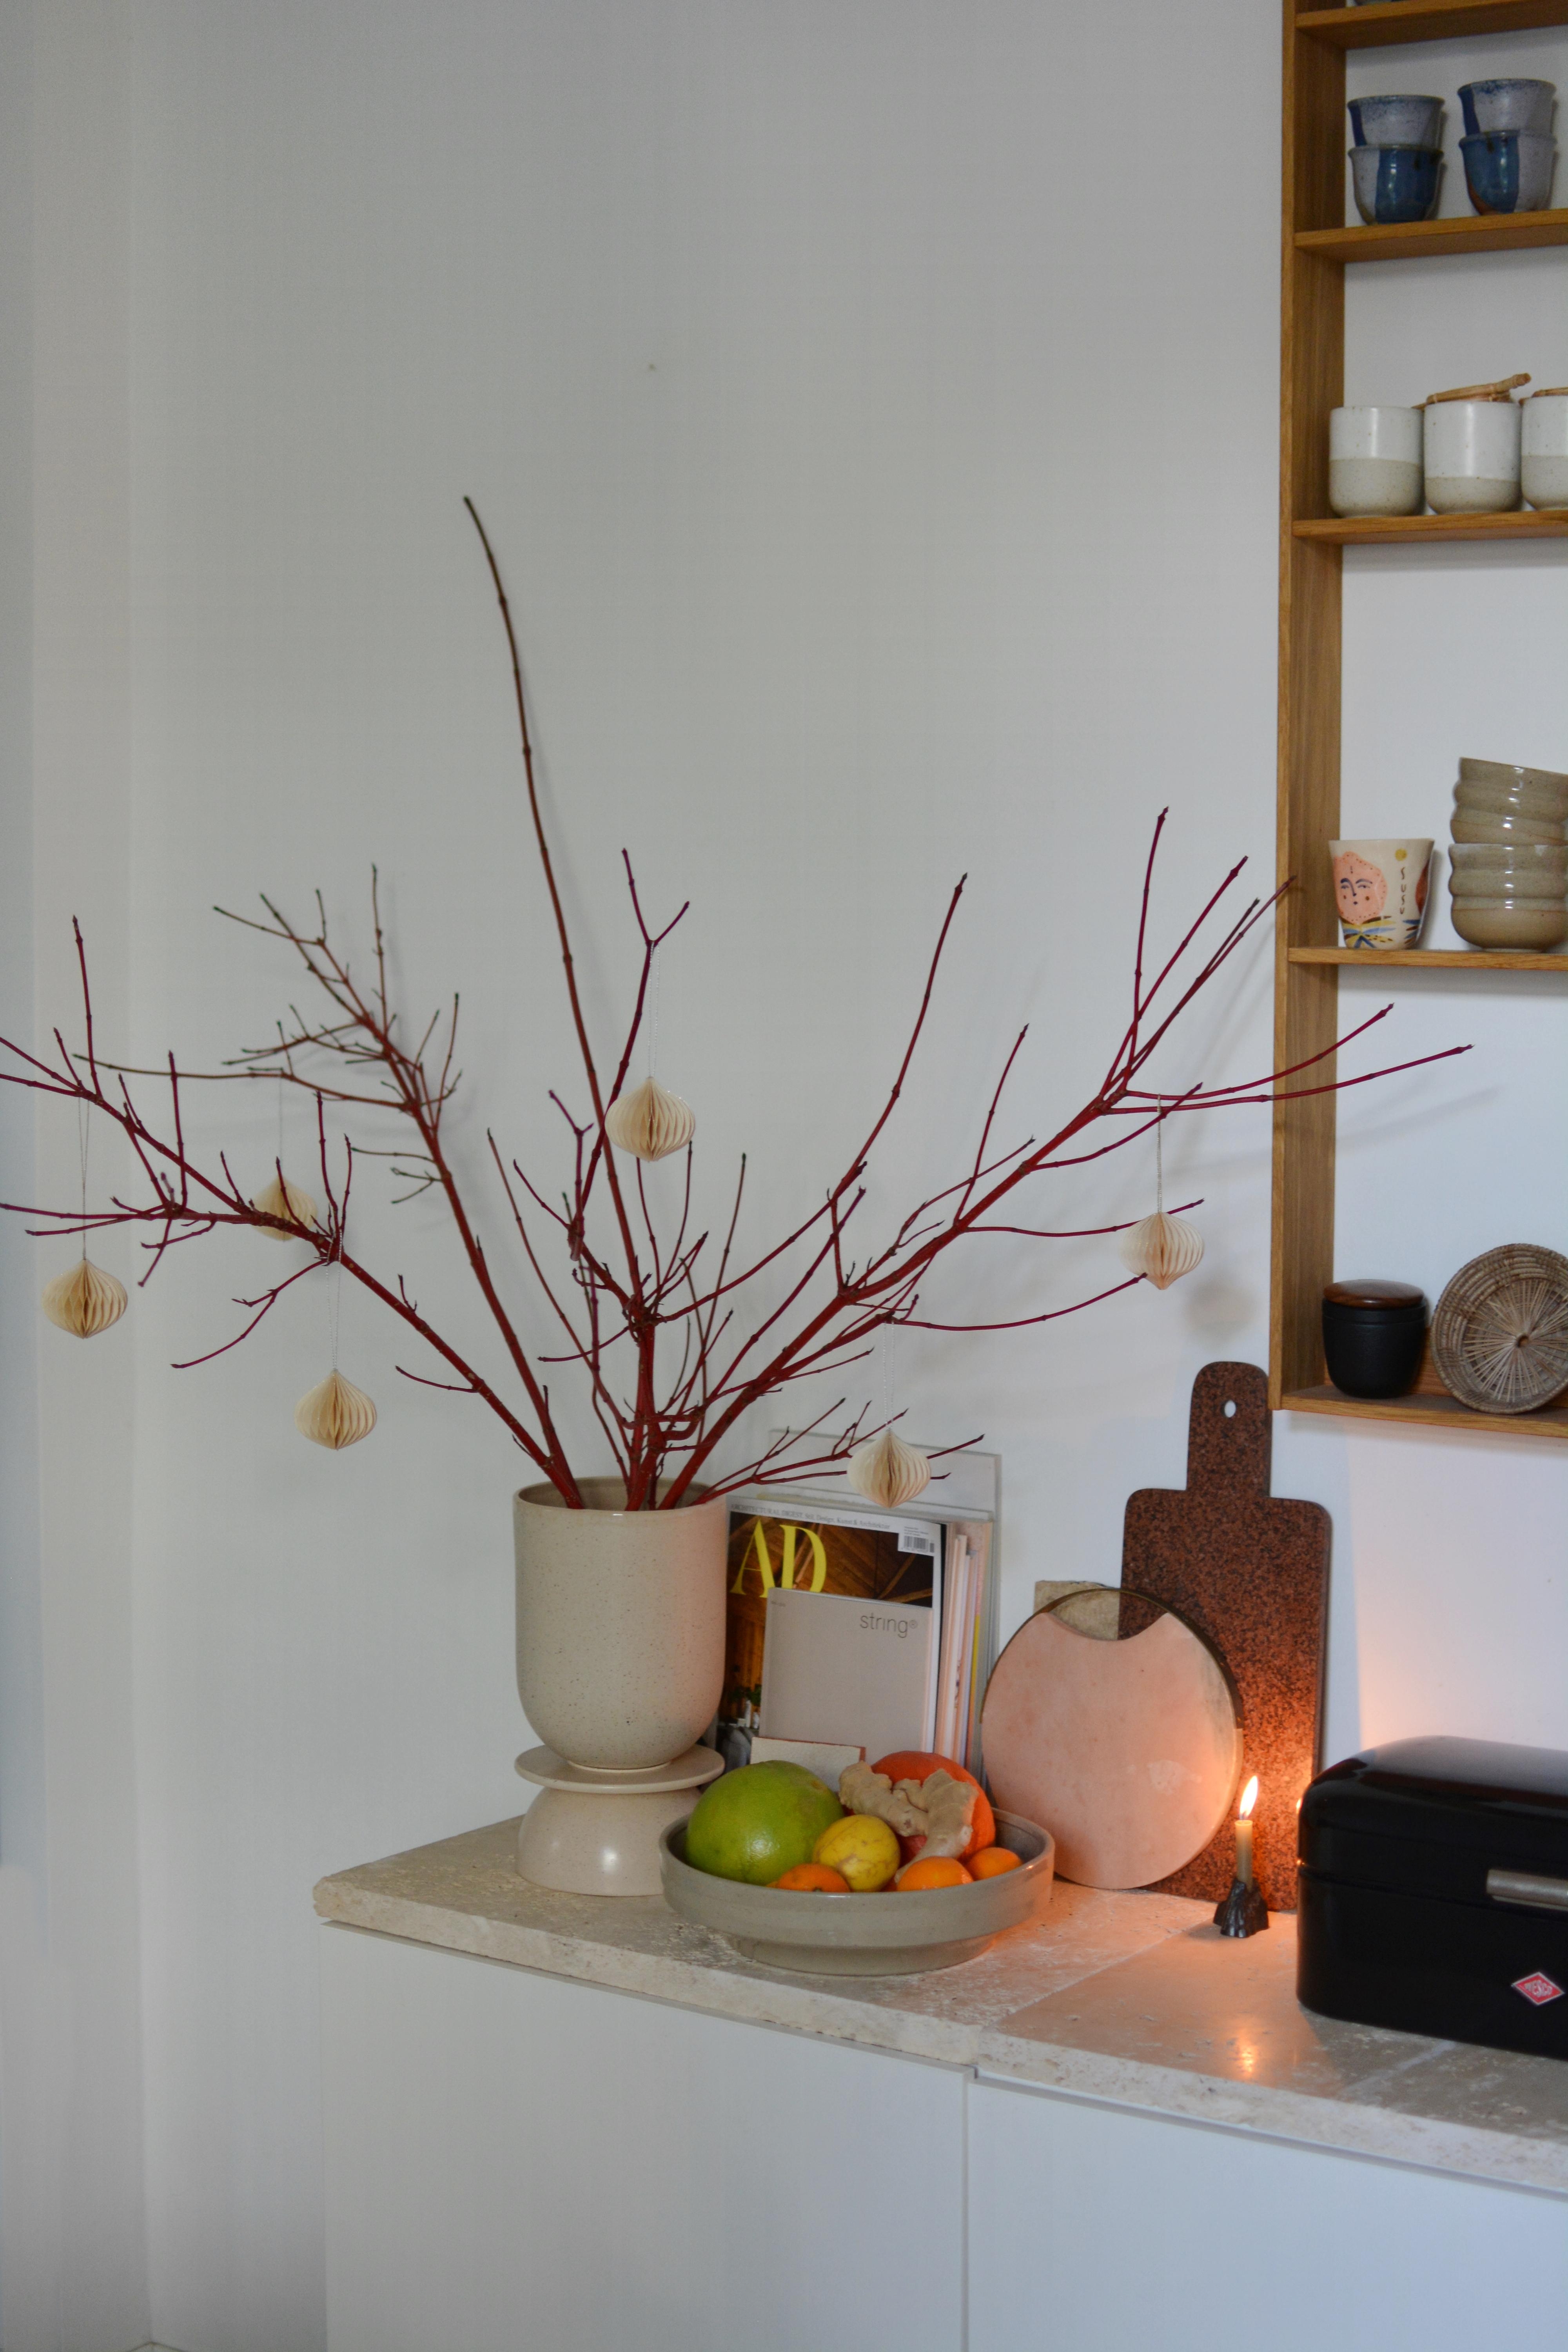 Erste Winterdeko in Form von roten Zweigen und ein paar Ornamenten ist auch schon eingezogen. ✨❄️

#küche #wandregal #winterdeko